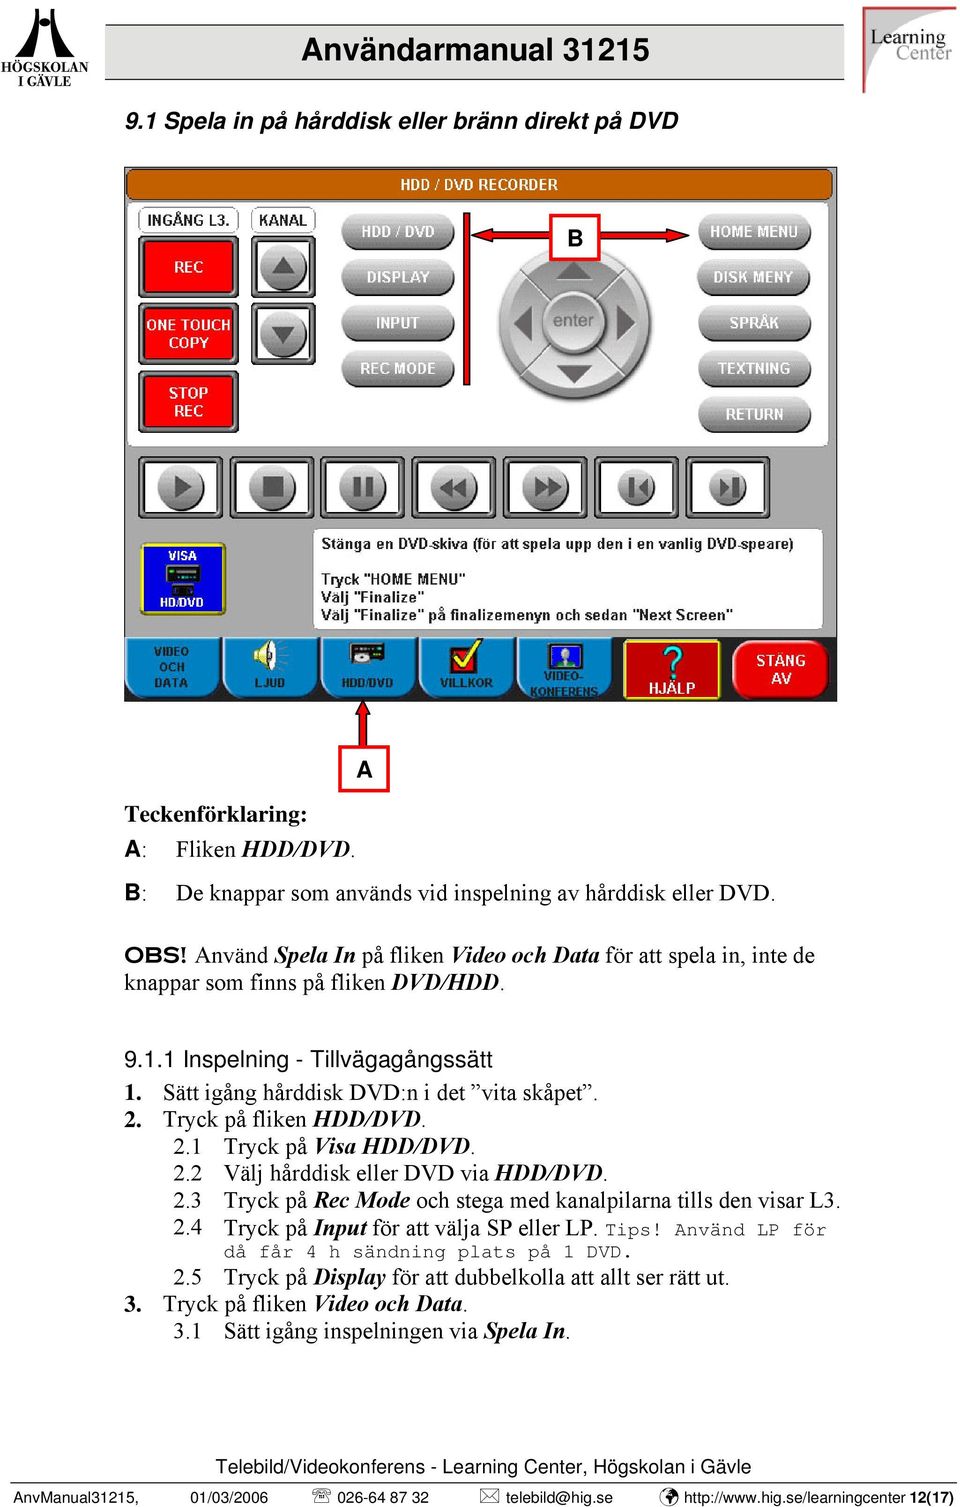 Tryck på fliken HDD/DVD. 2.1 Tryck på Visa HDD/DVD. 2.2 Välj hårddisk eller DVD via HDD/DVD. 2.3 Tryck på Rec Mode och stega med kanalpilarna tills den visar L3. 2.4 Tryck på Input för att välja SP eller LP.